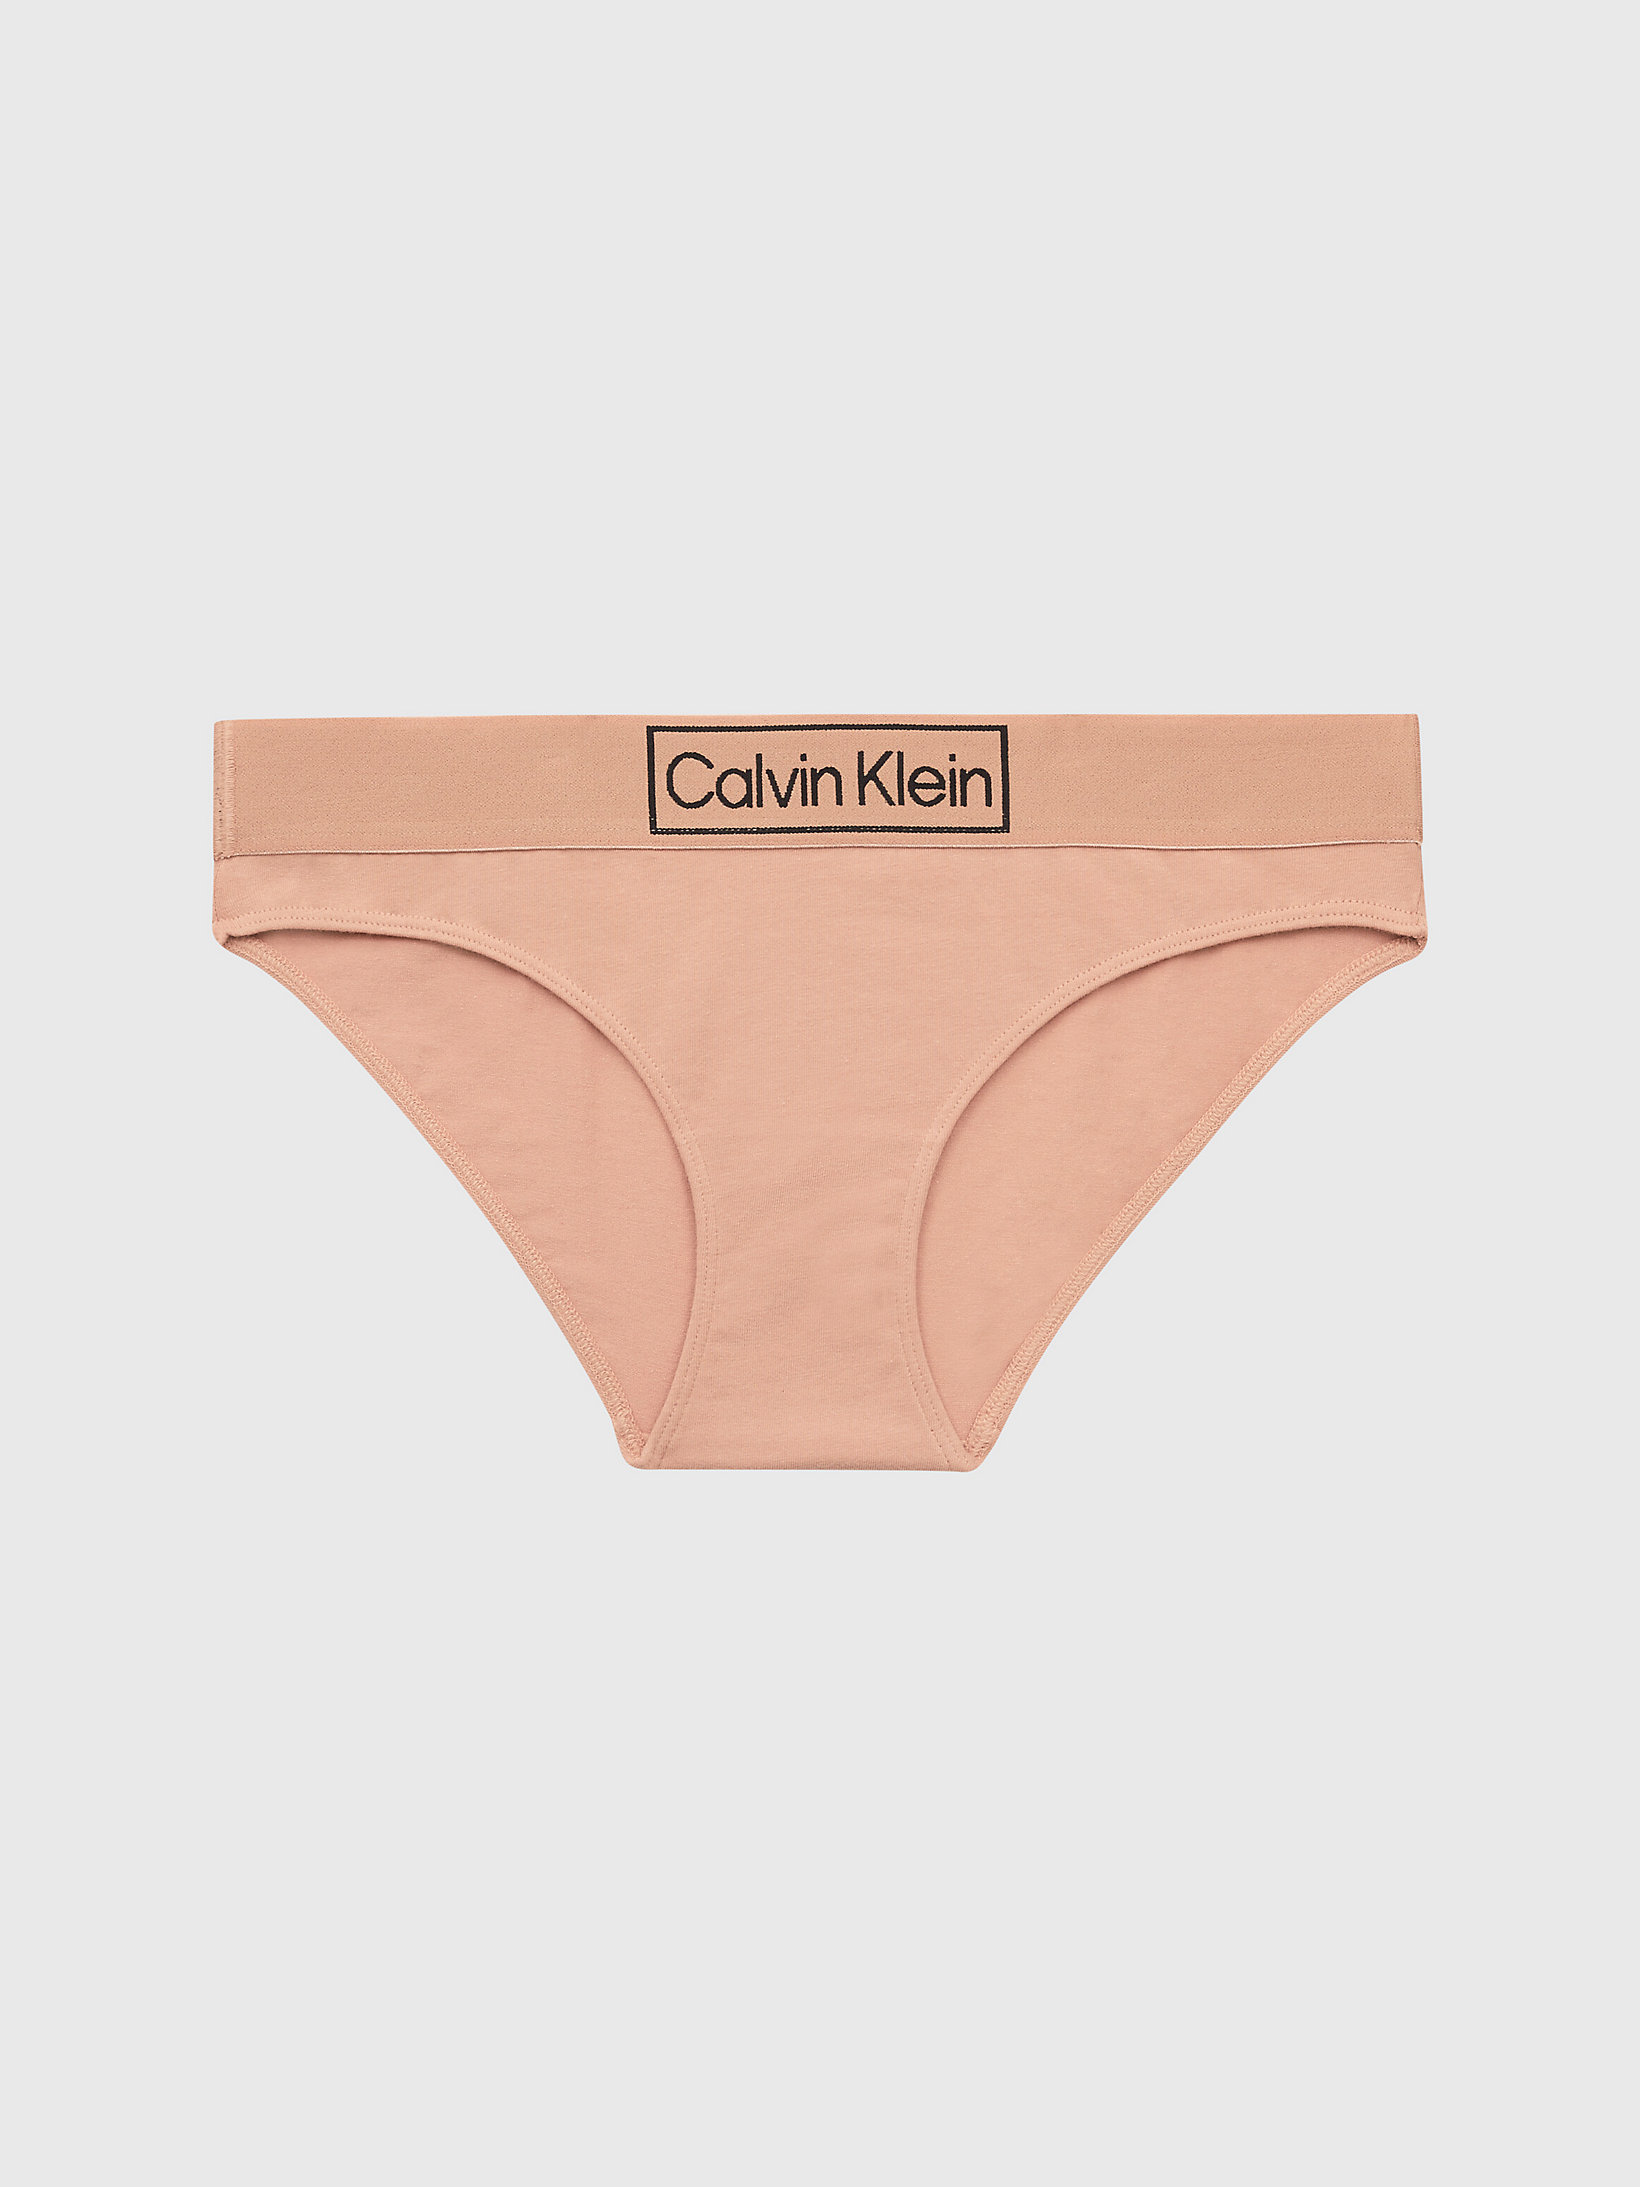 Clay Bikini Brief - Reimagined Heritage undefined women Calvin Klein